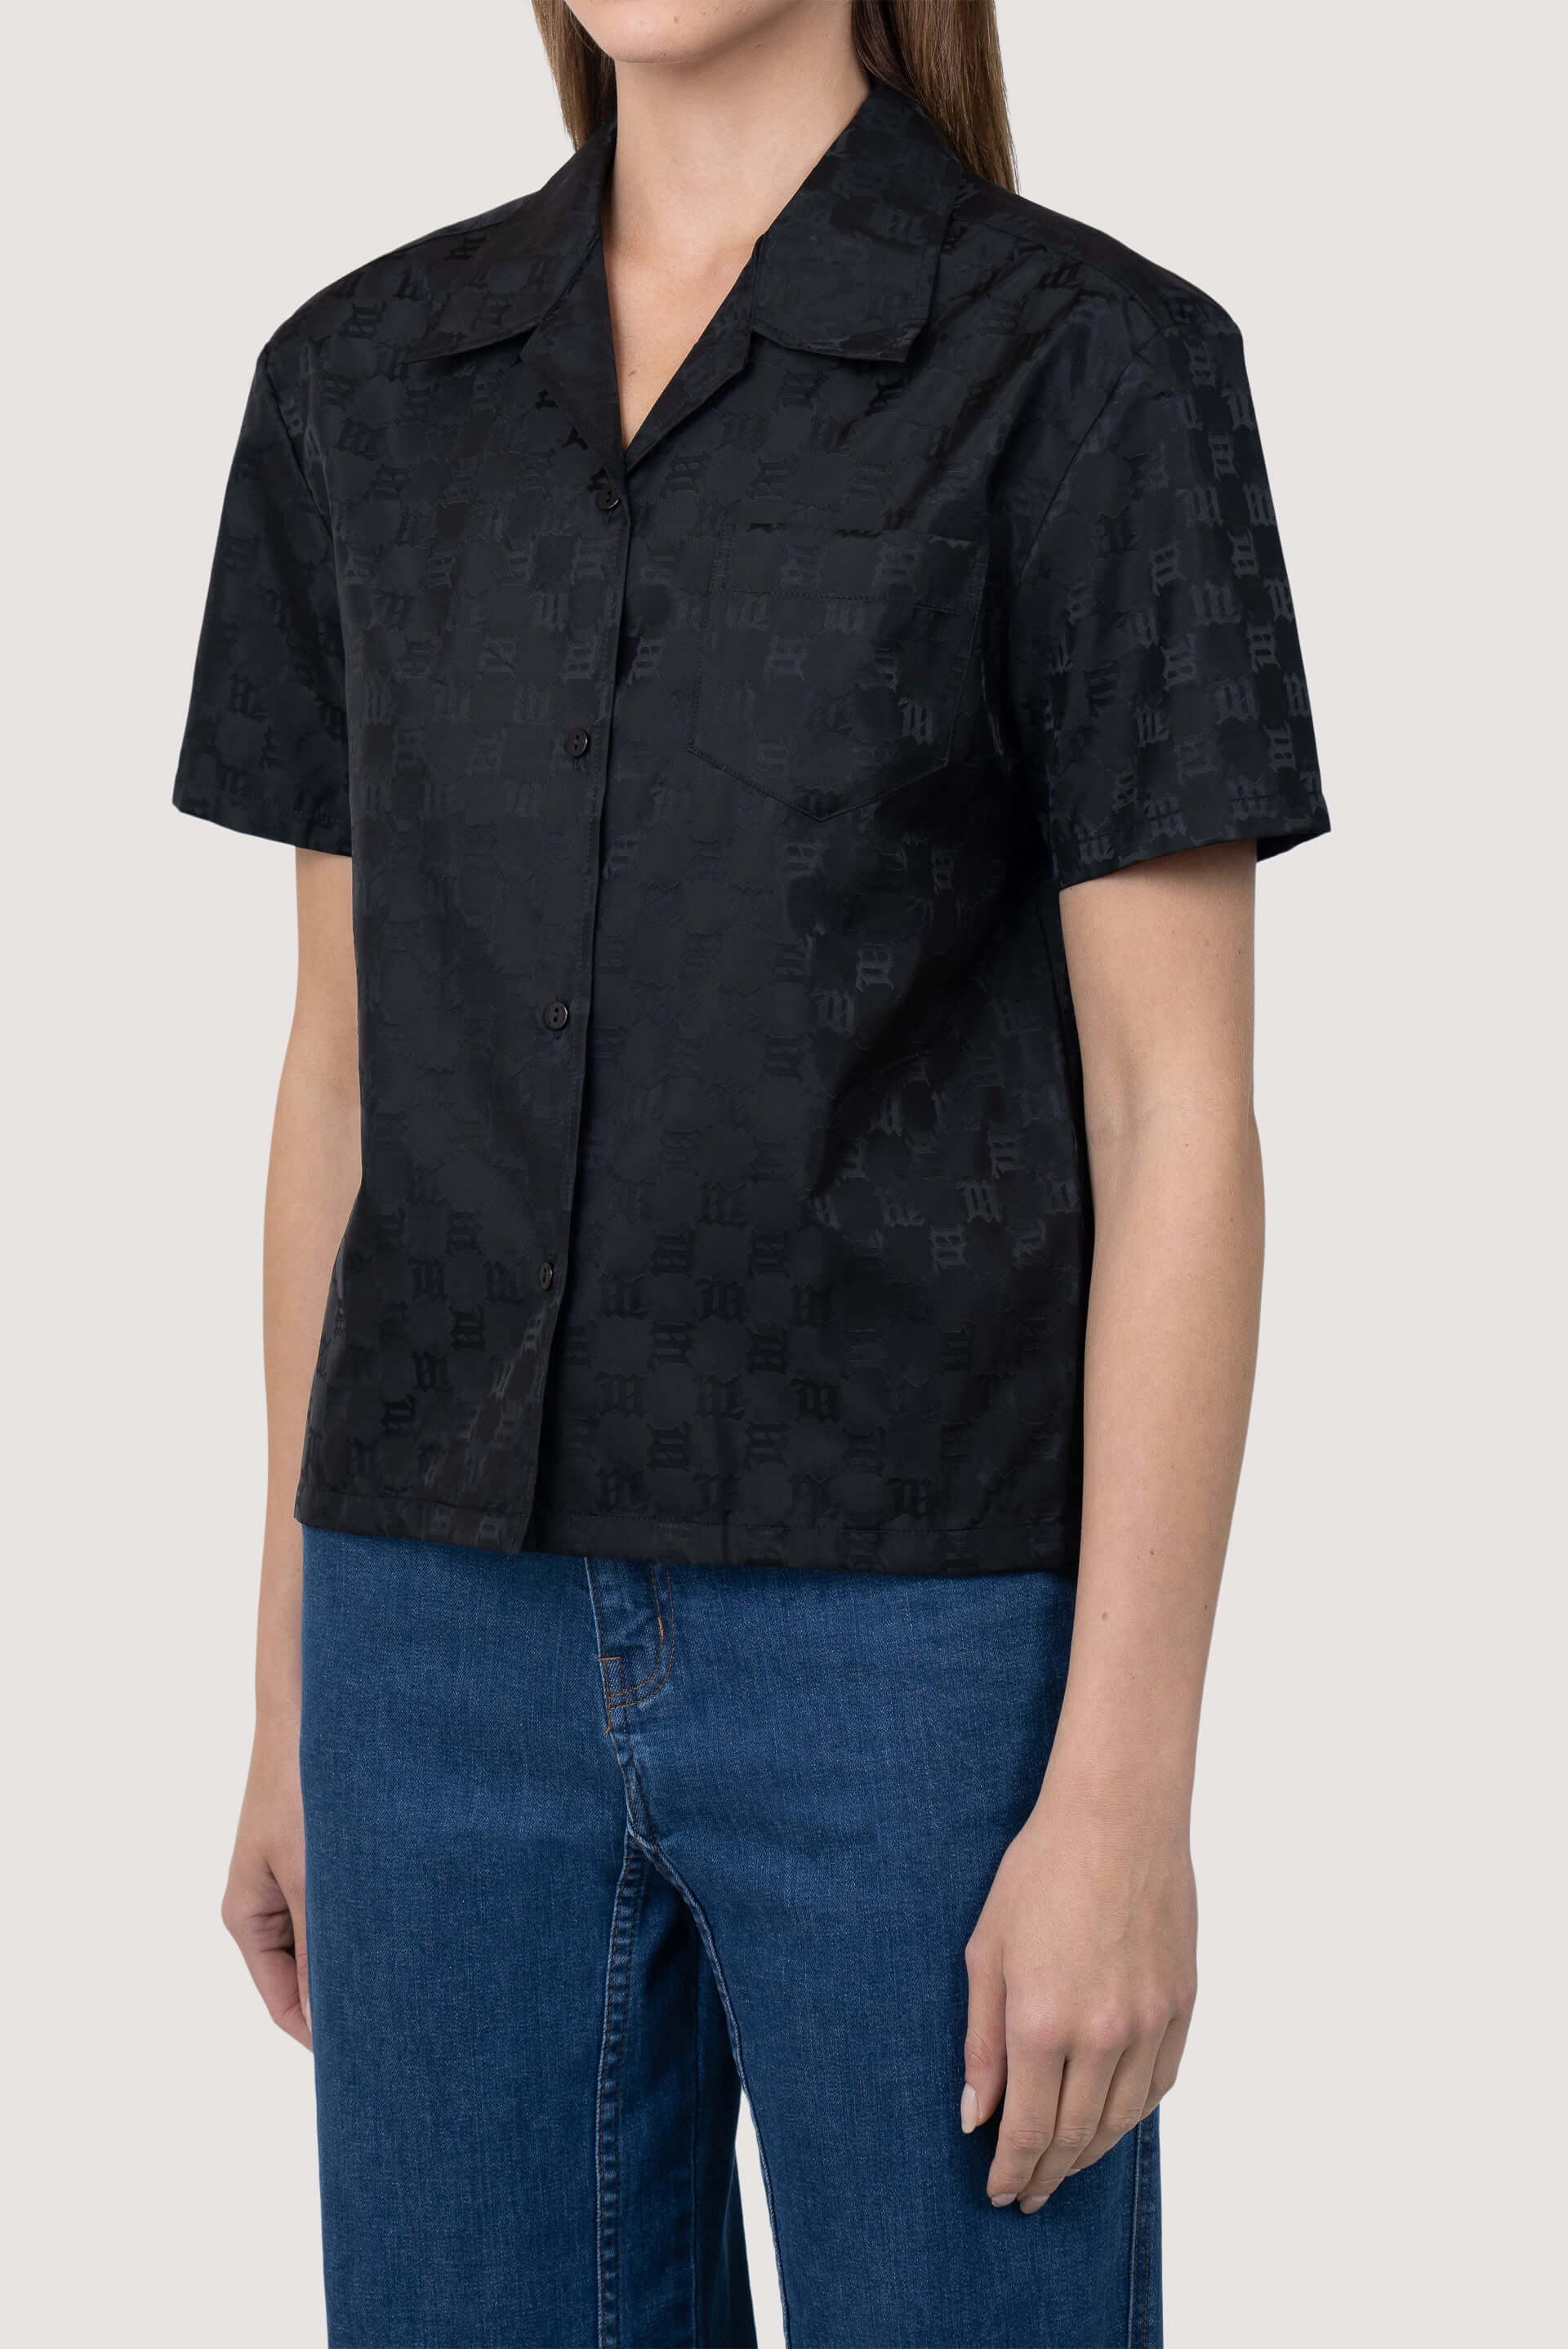 Louis Vuitton] Louis Vuitton Tops monogram short sleeve shirt